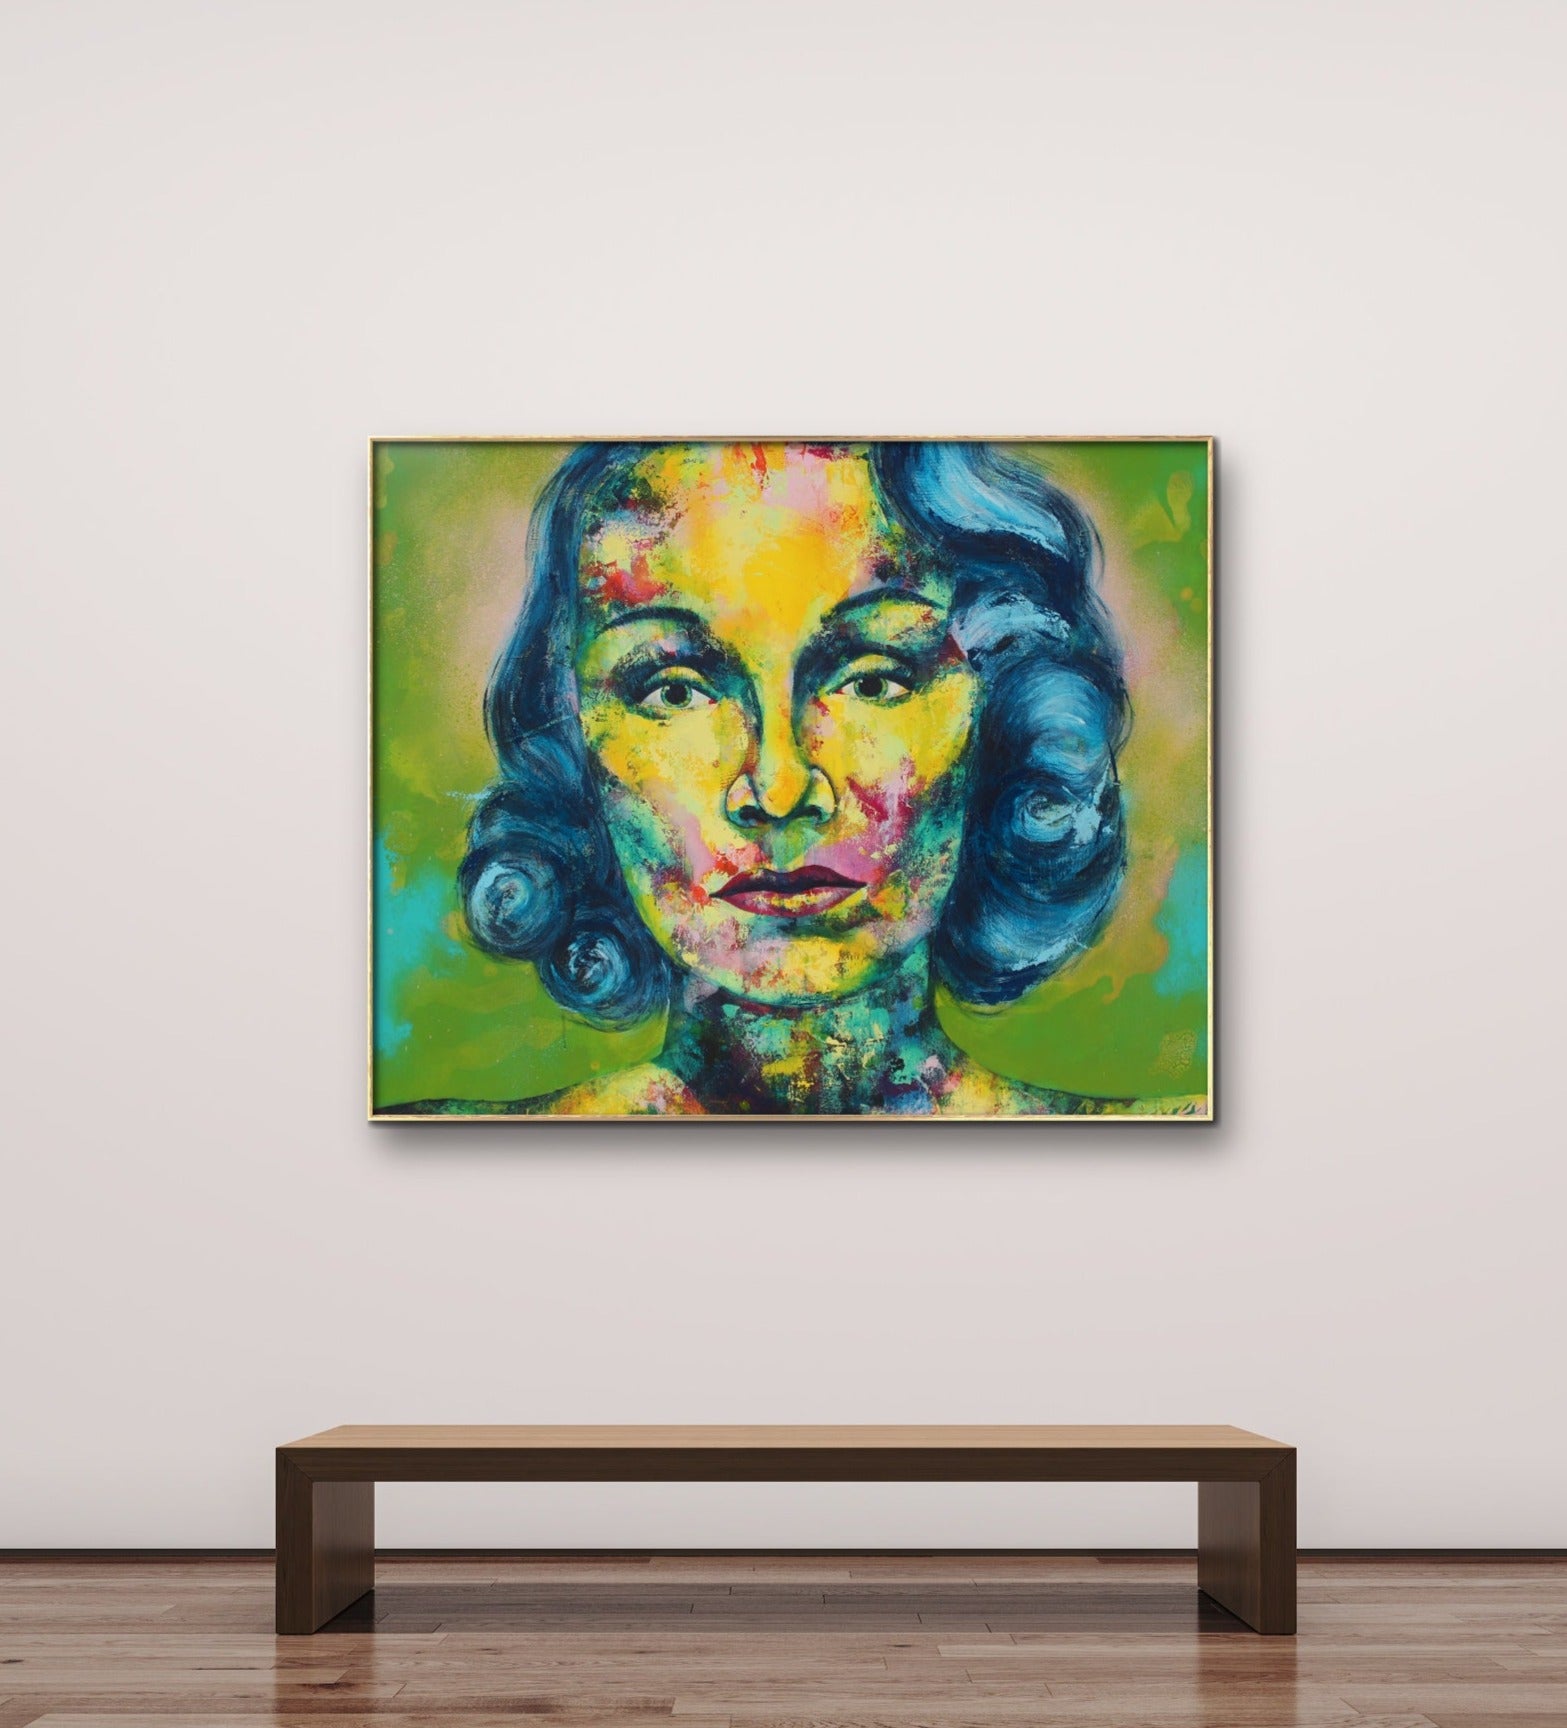 Marlene Dietrich Gemälde, 100 x 120 cm